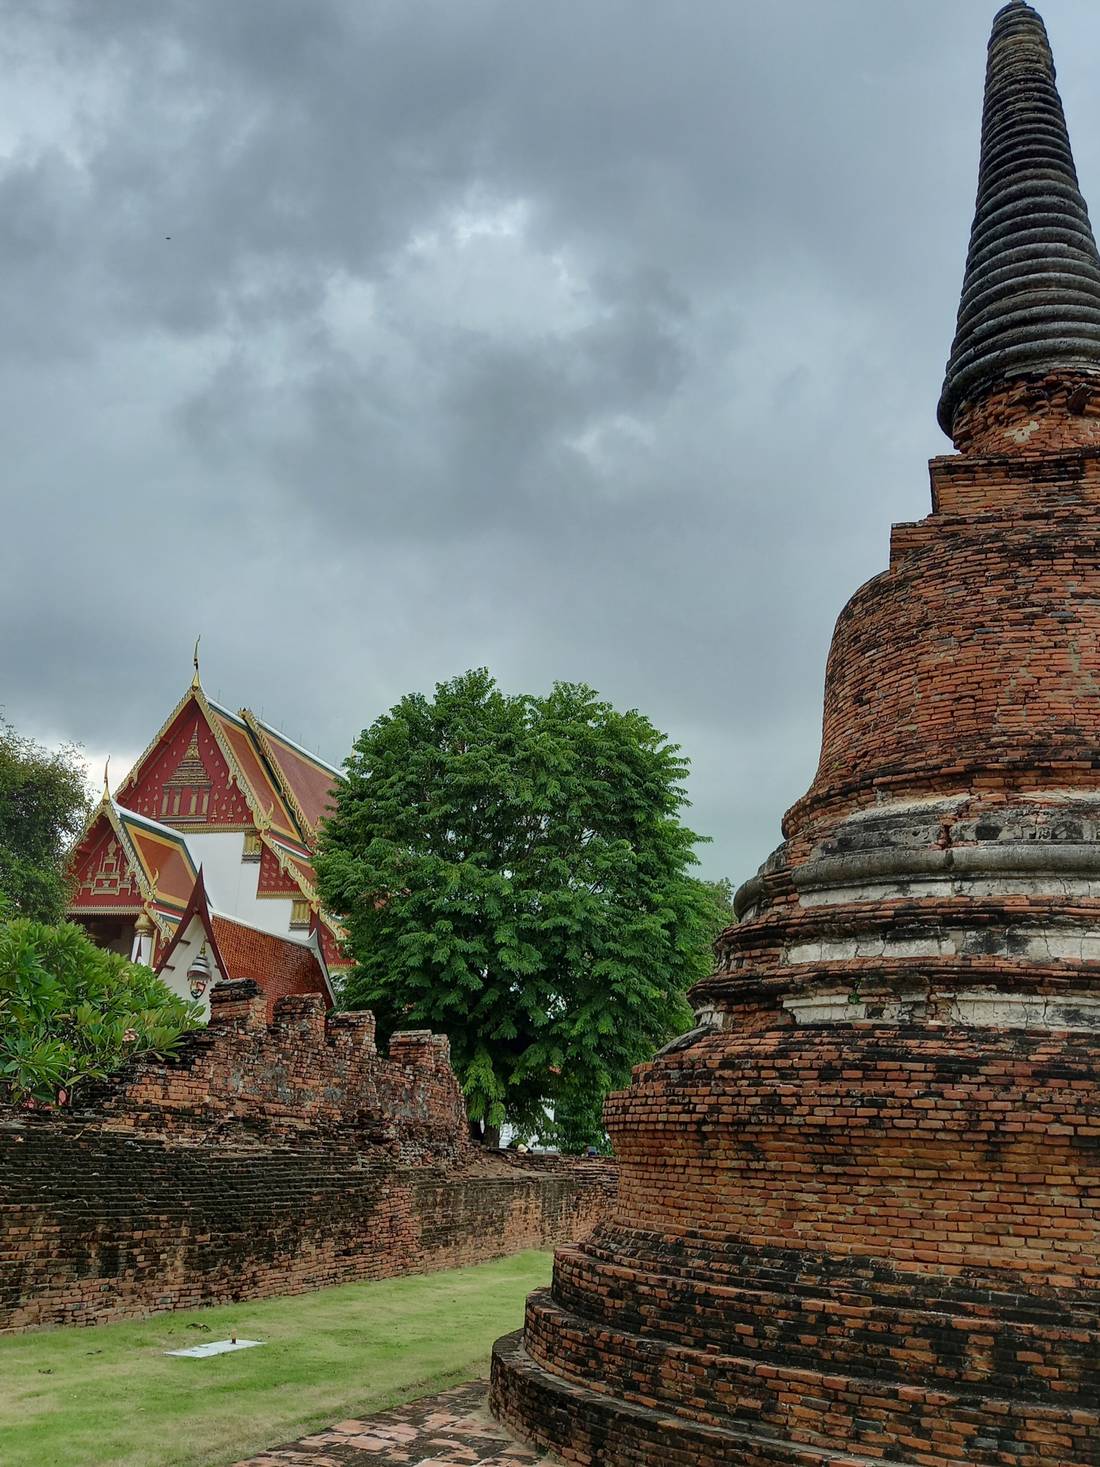 A Thai Buddhist temple